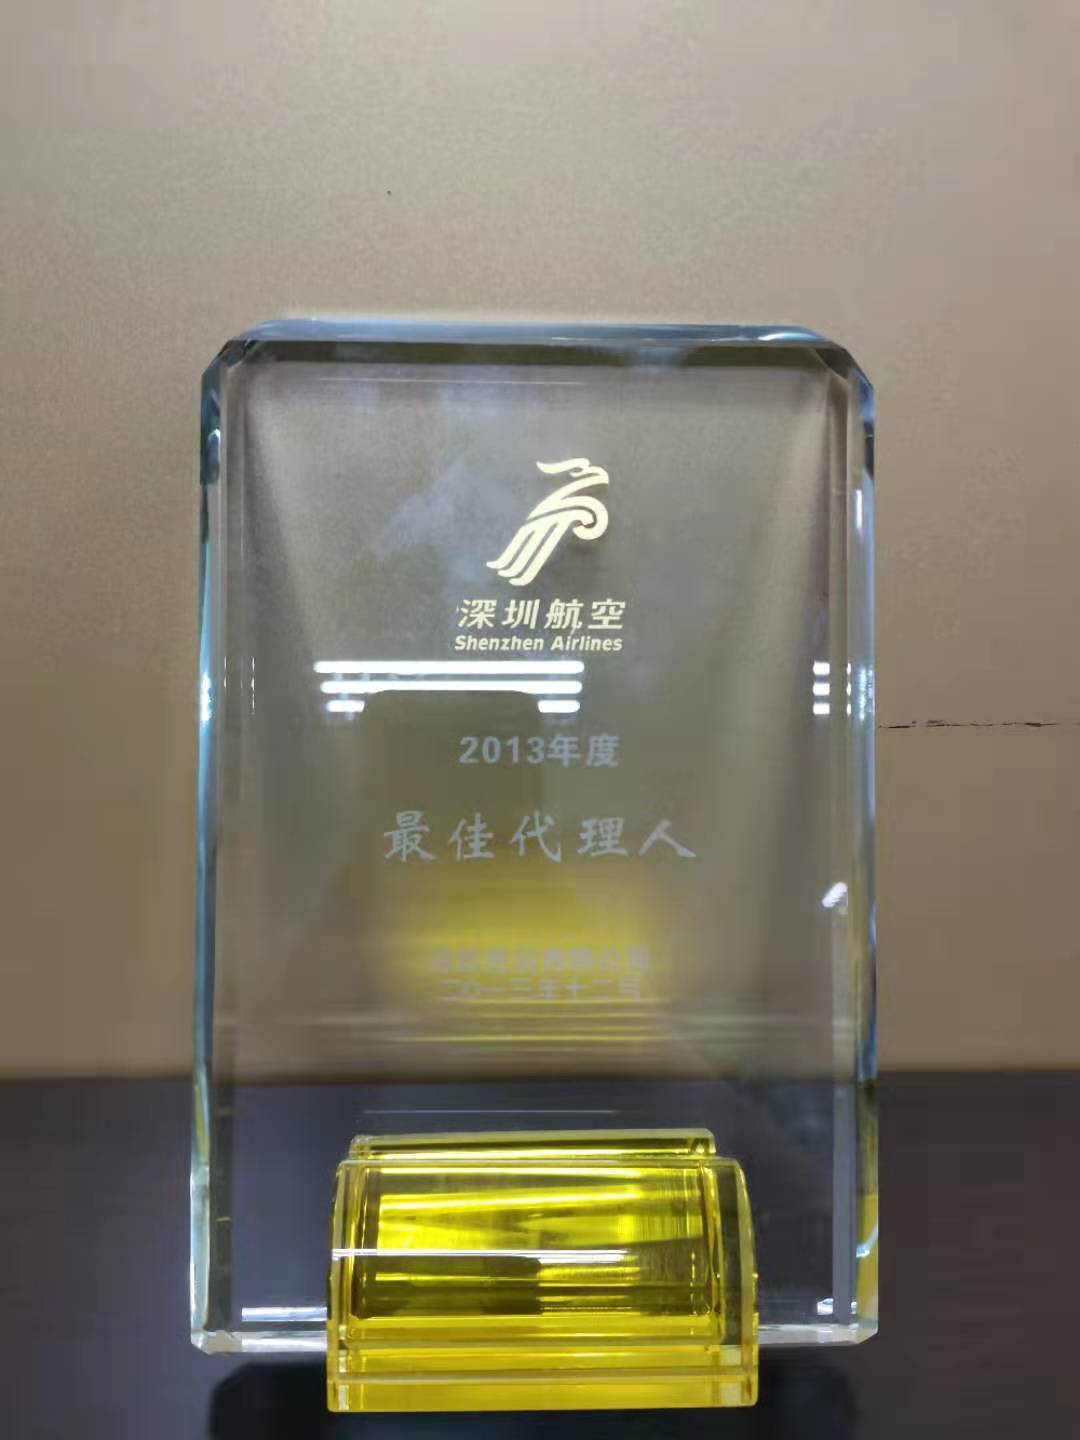 ZH Award 2013